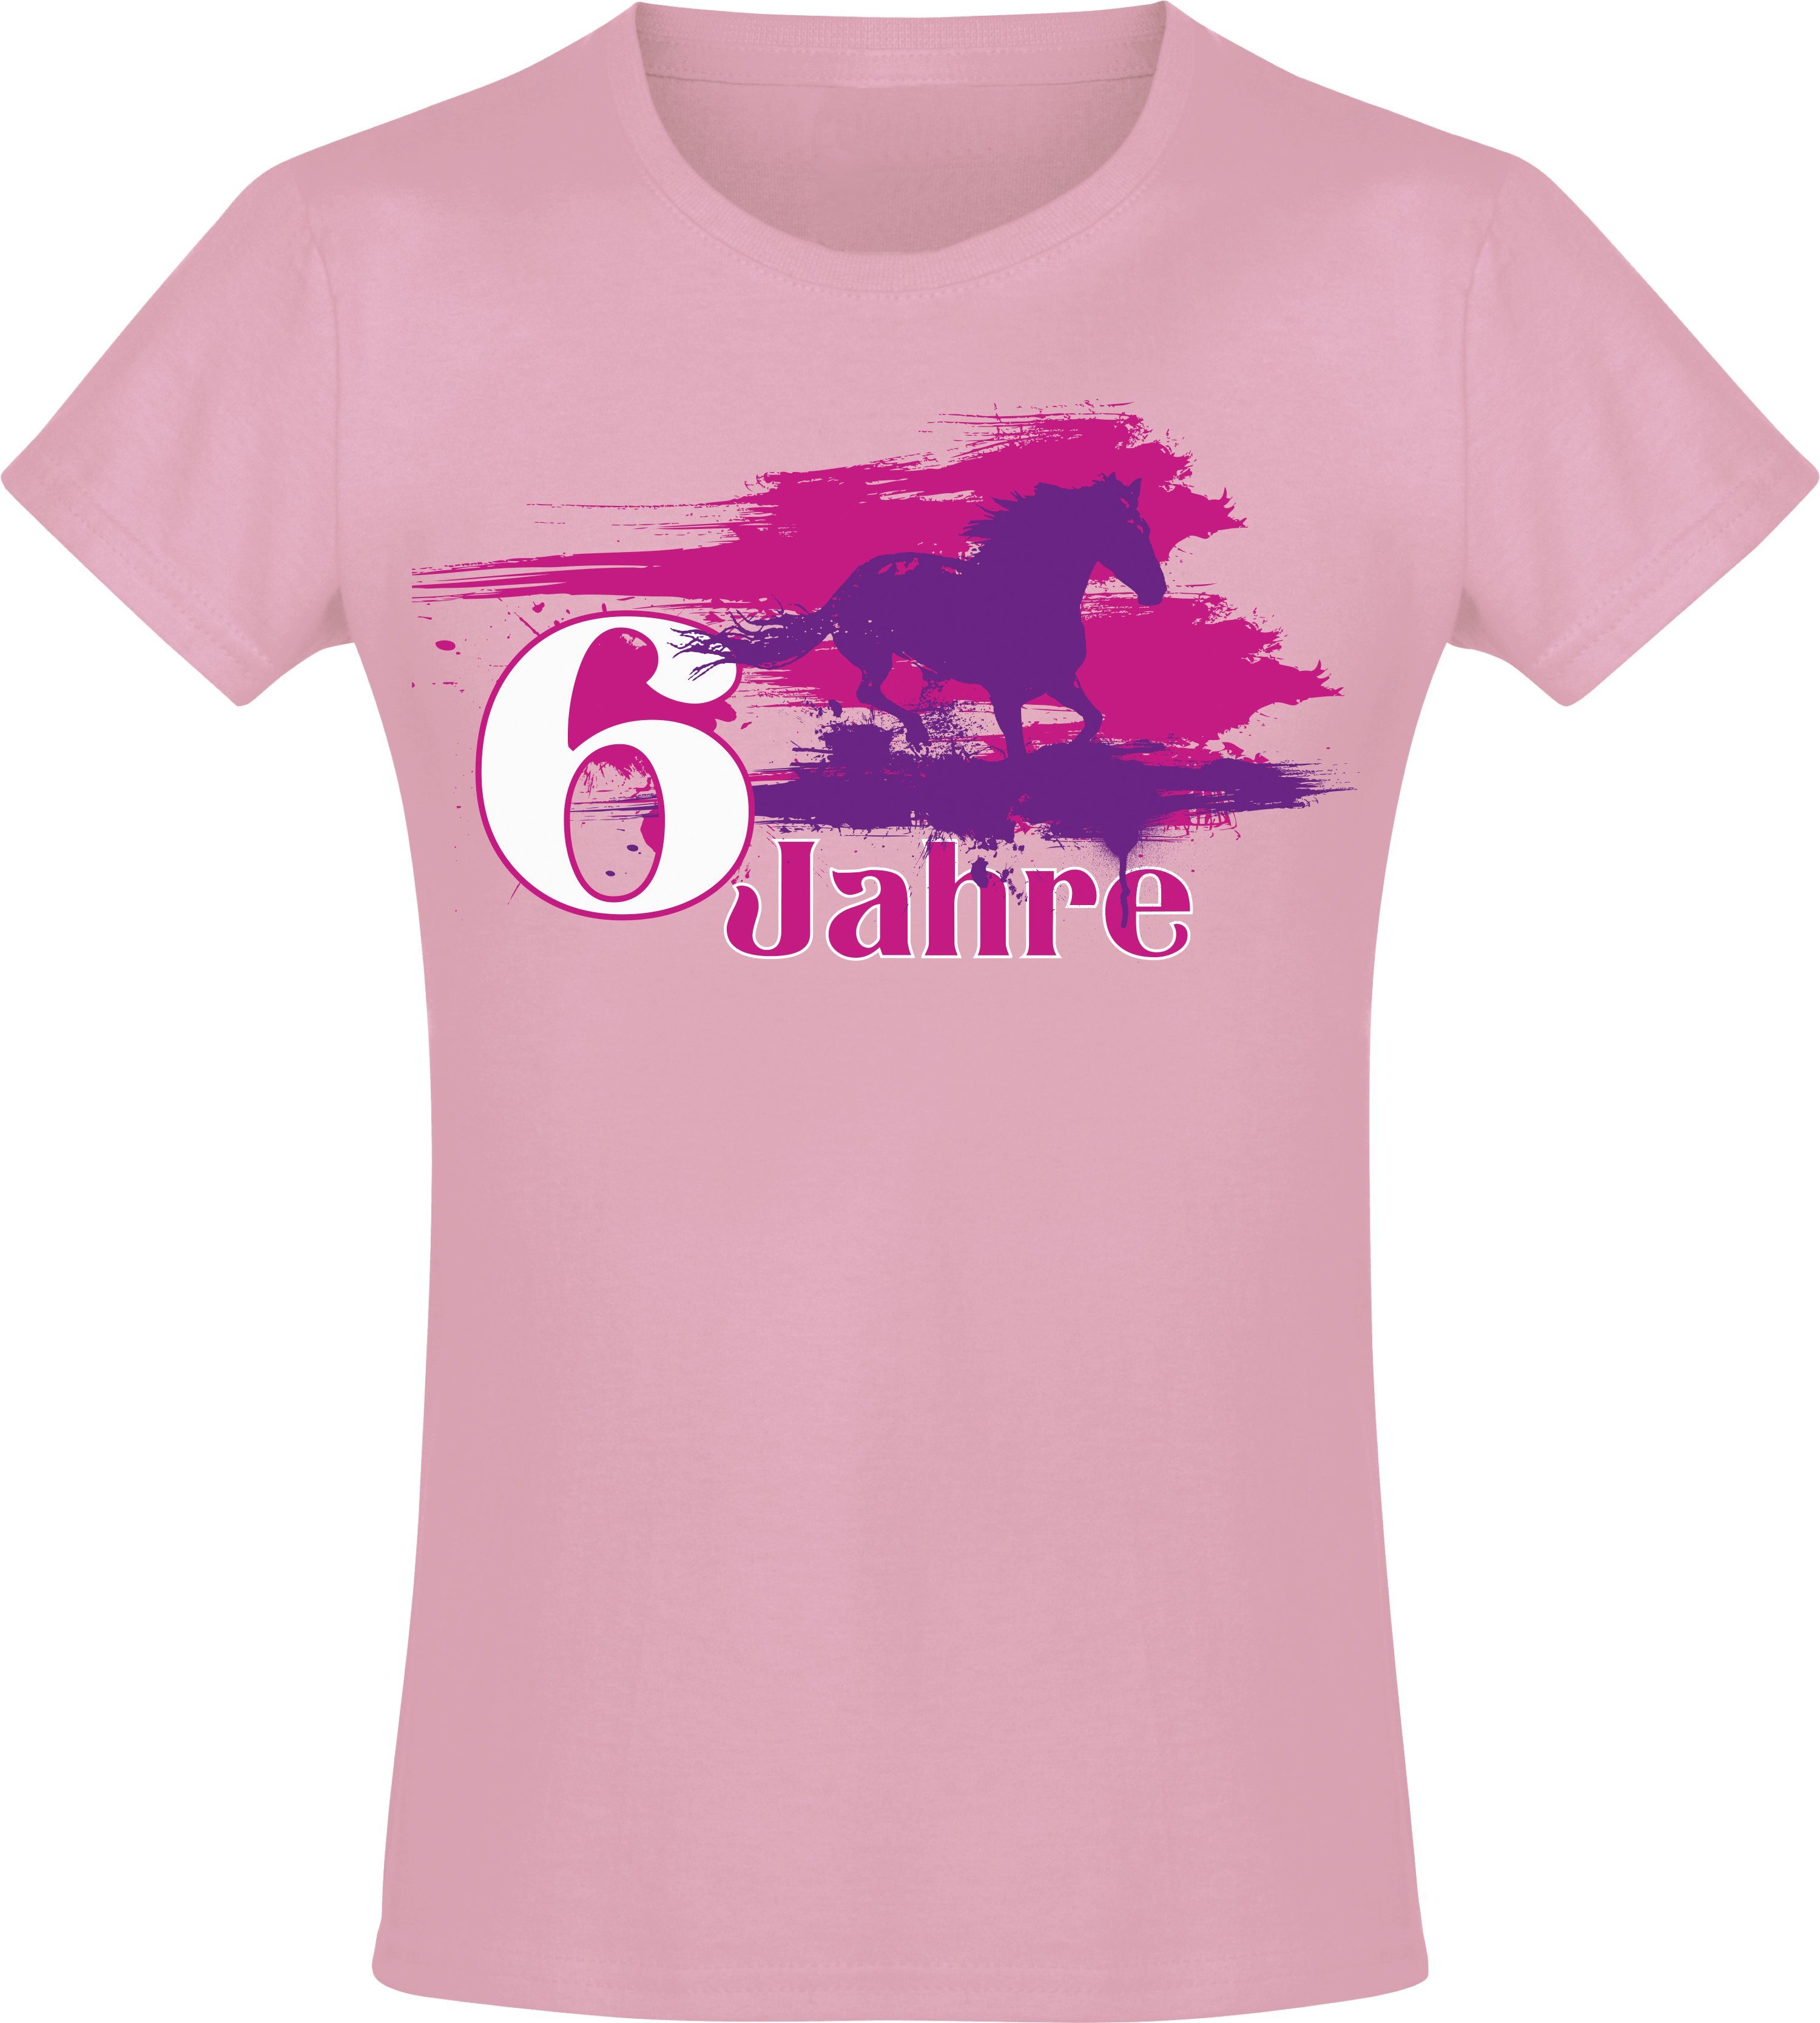 Baddery Print-Shirt Geburtstagsgeschenk für Mädchen : Geburtstagspferd 6 Jahre, hochwertiger Siebdruck, aus Baumwolle